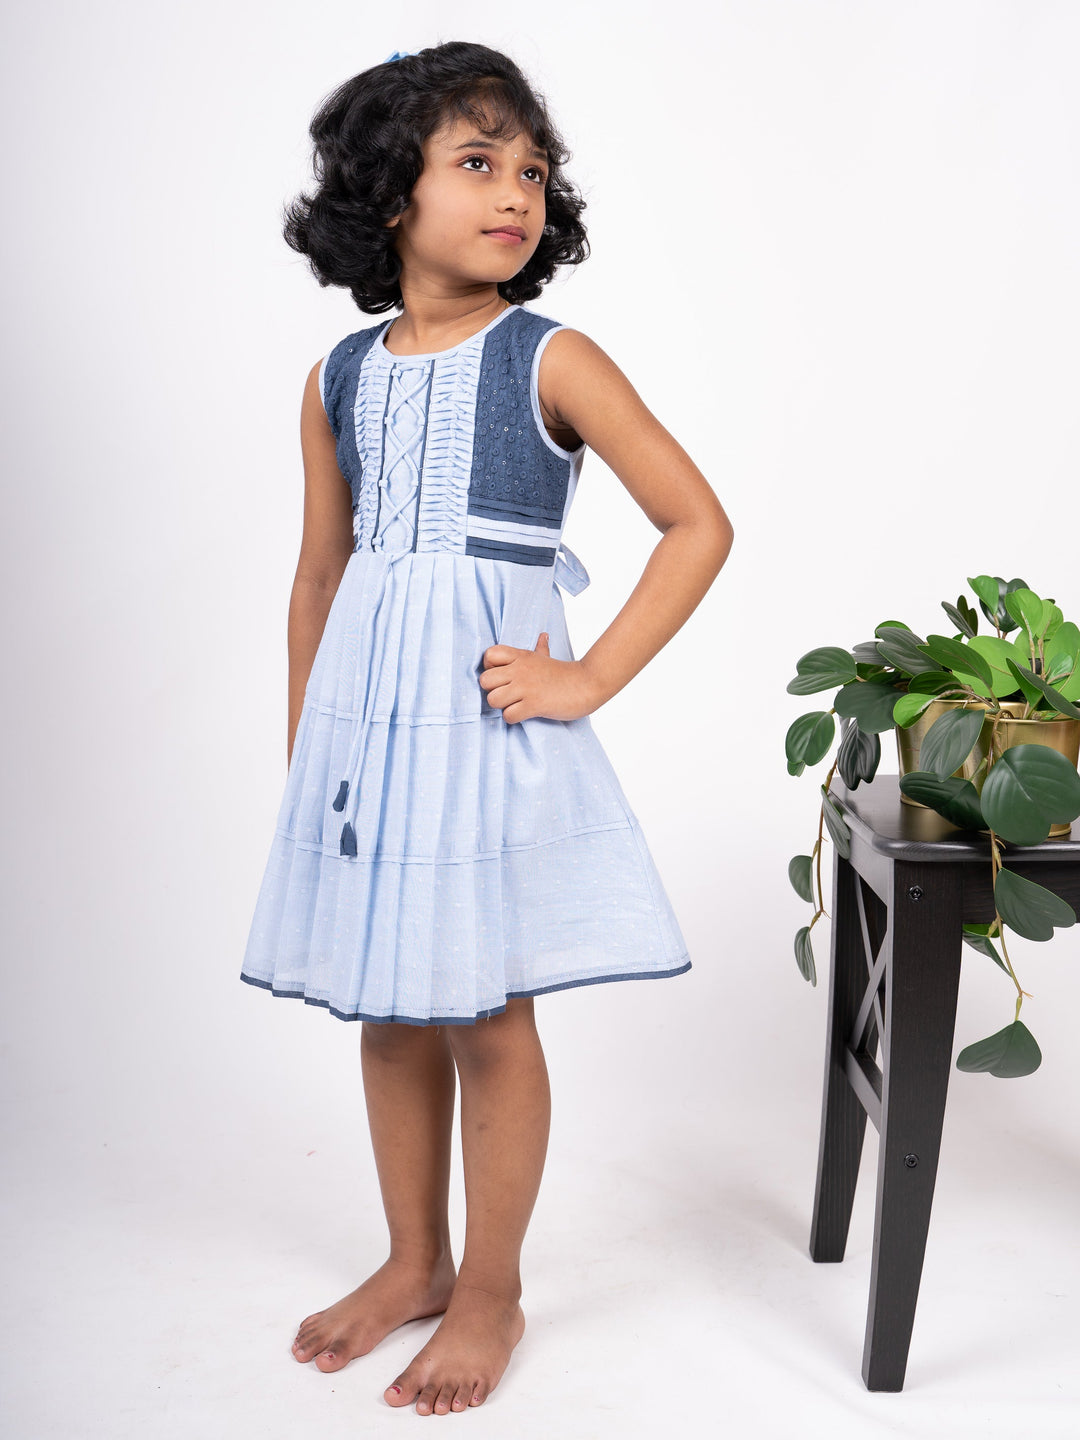 The Nesavu Frocks & Dresses Sky blue Casual Play Wear For Little Girls psr silks Nesavu